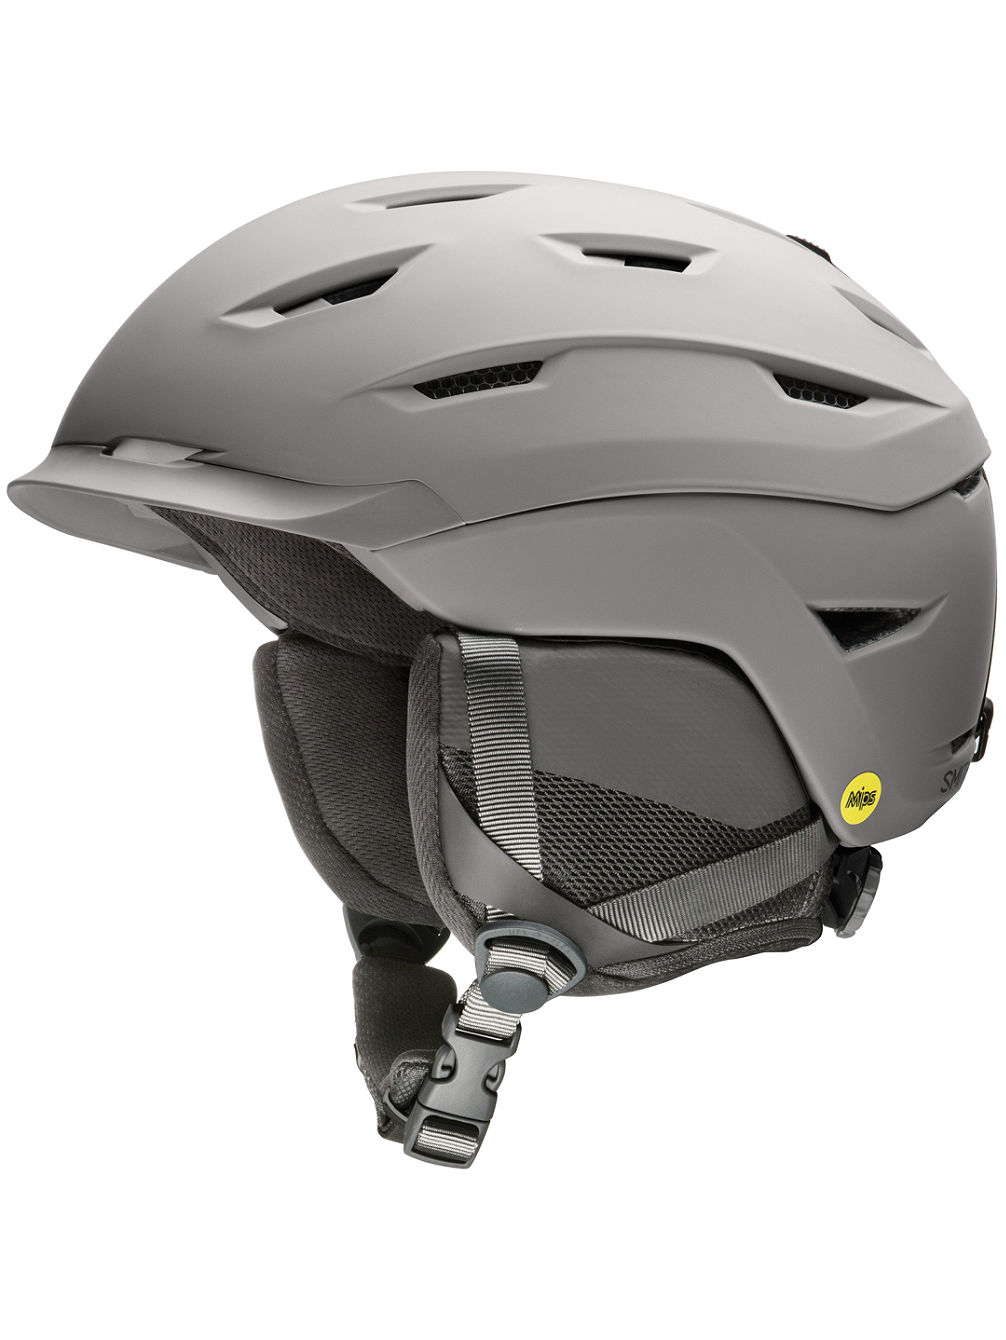 Level MIPS Helmet